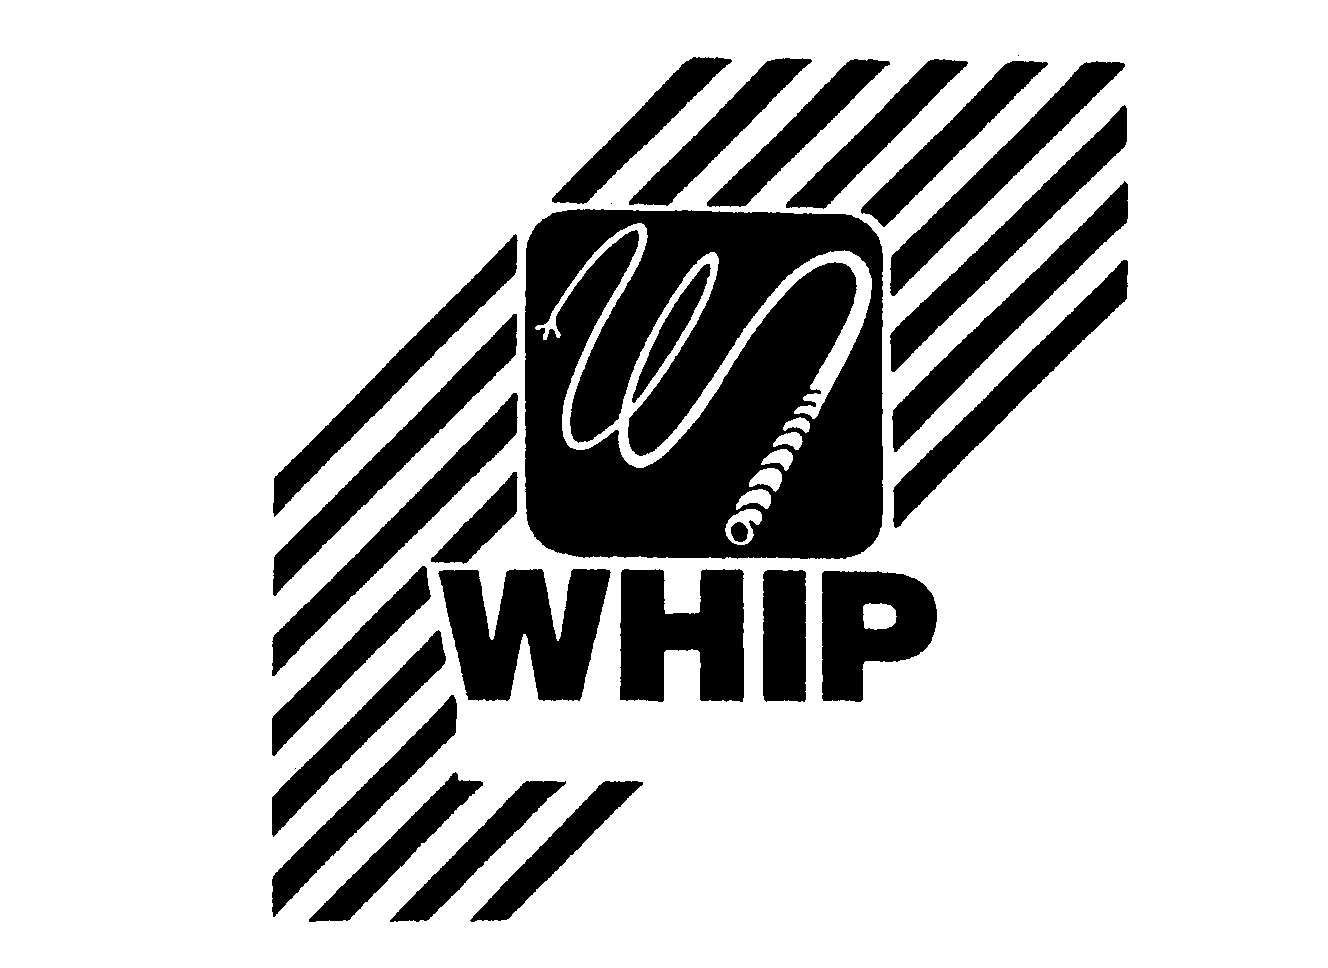 WHIP